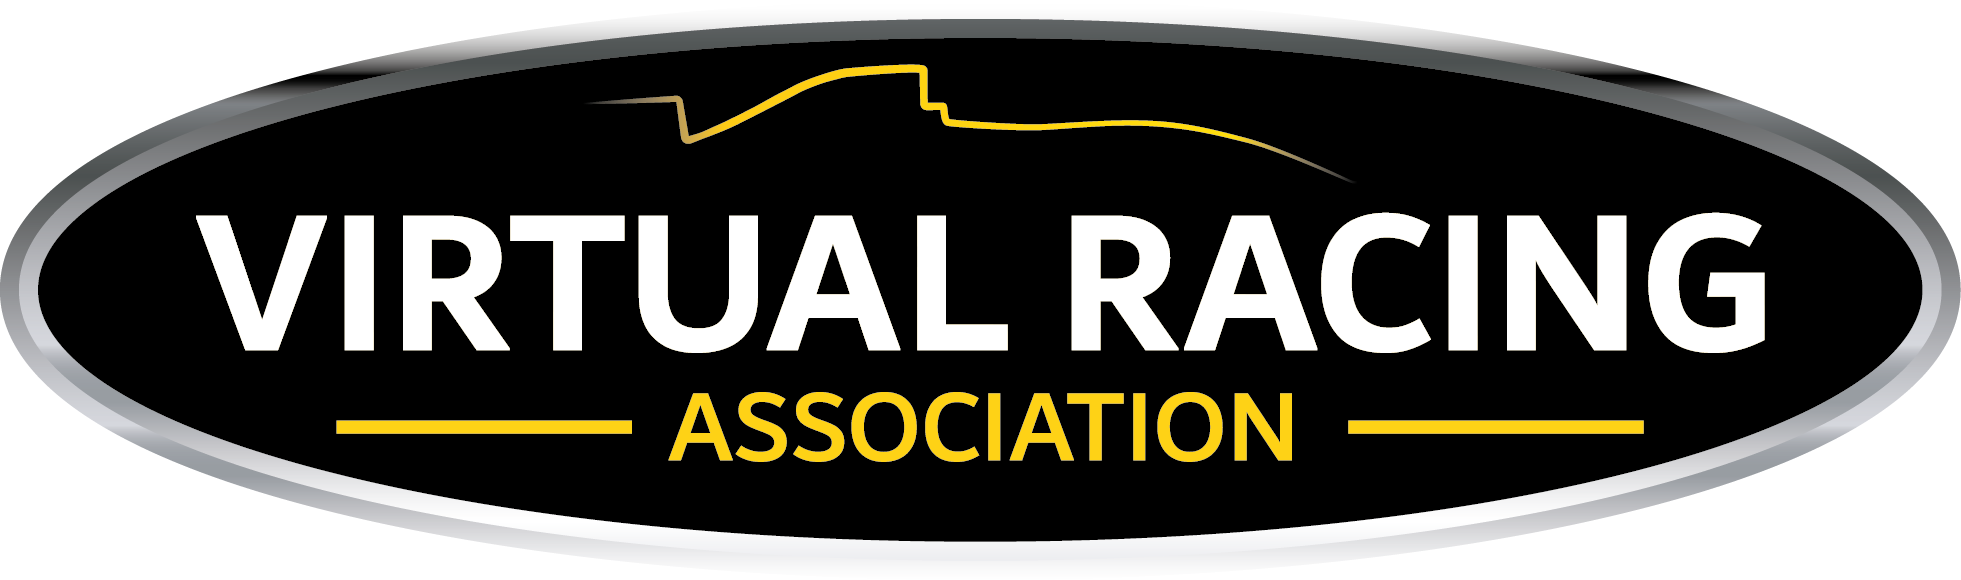 Virtual Racing Association